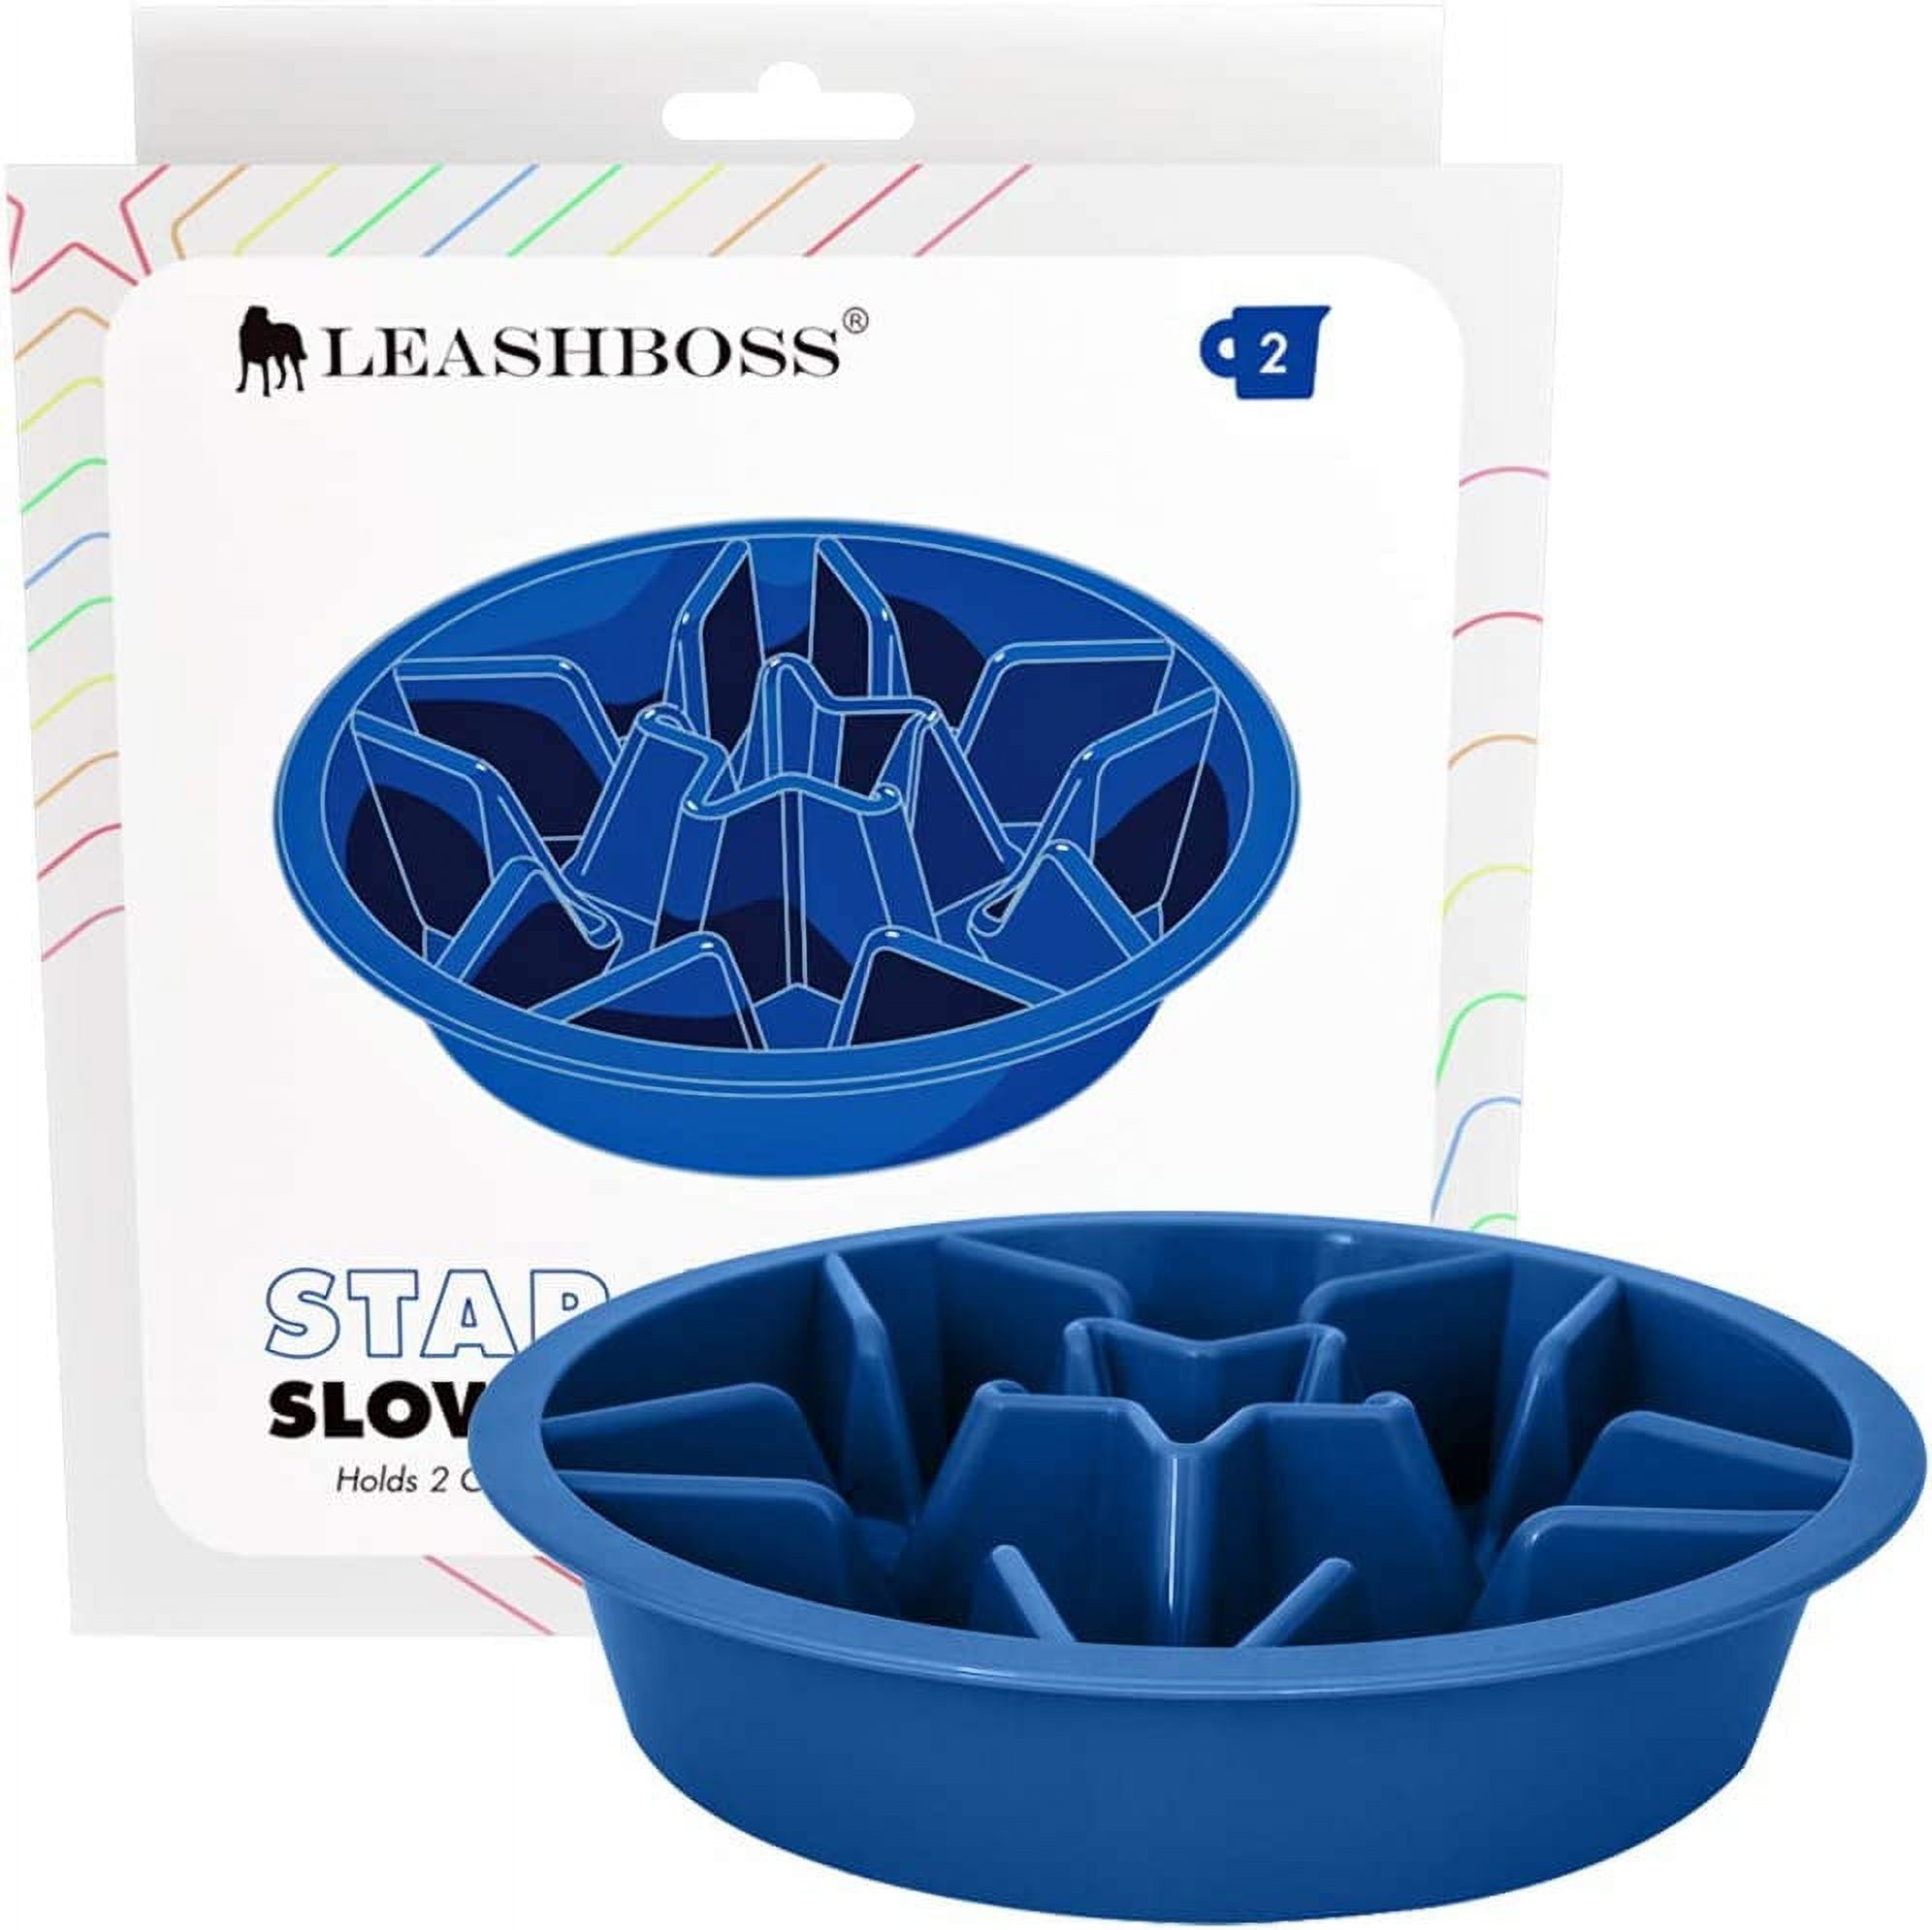 Harmony Mint Plastic Slow Feeder Dog Bowl, Large